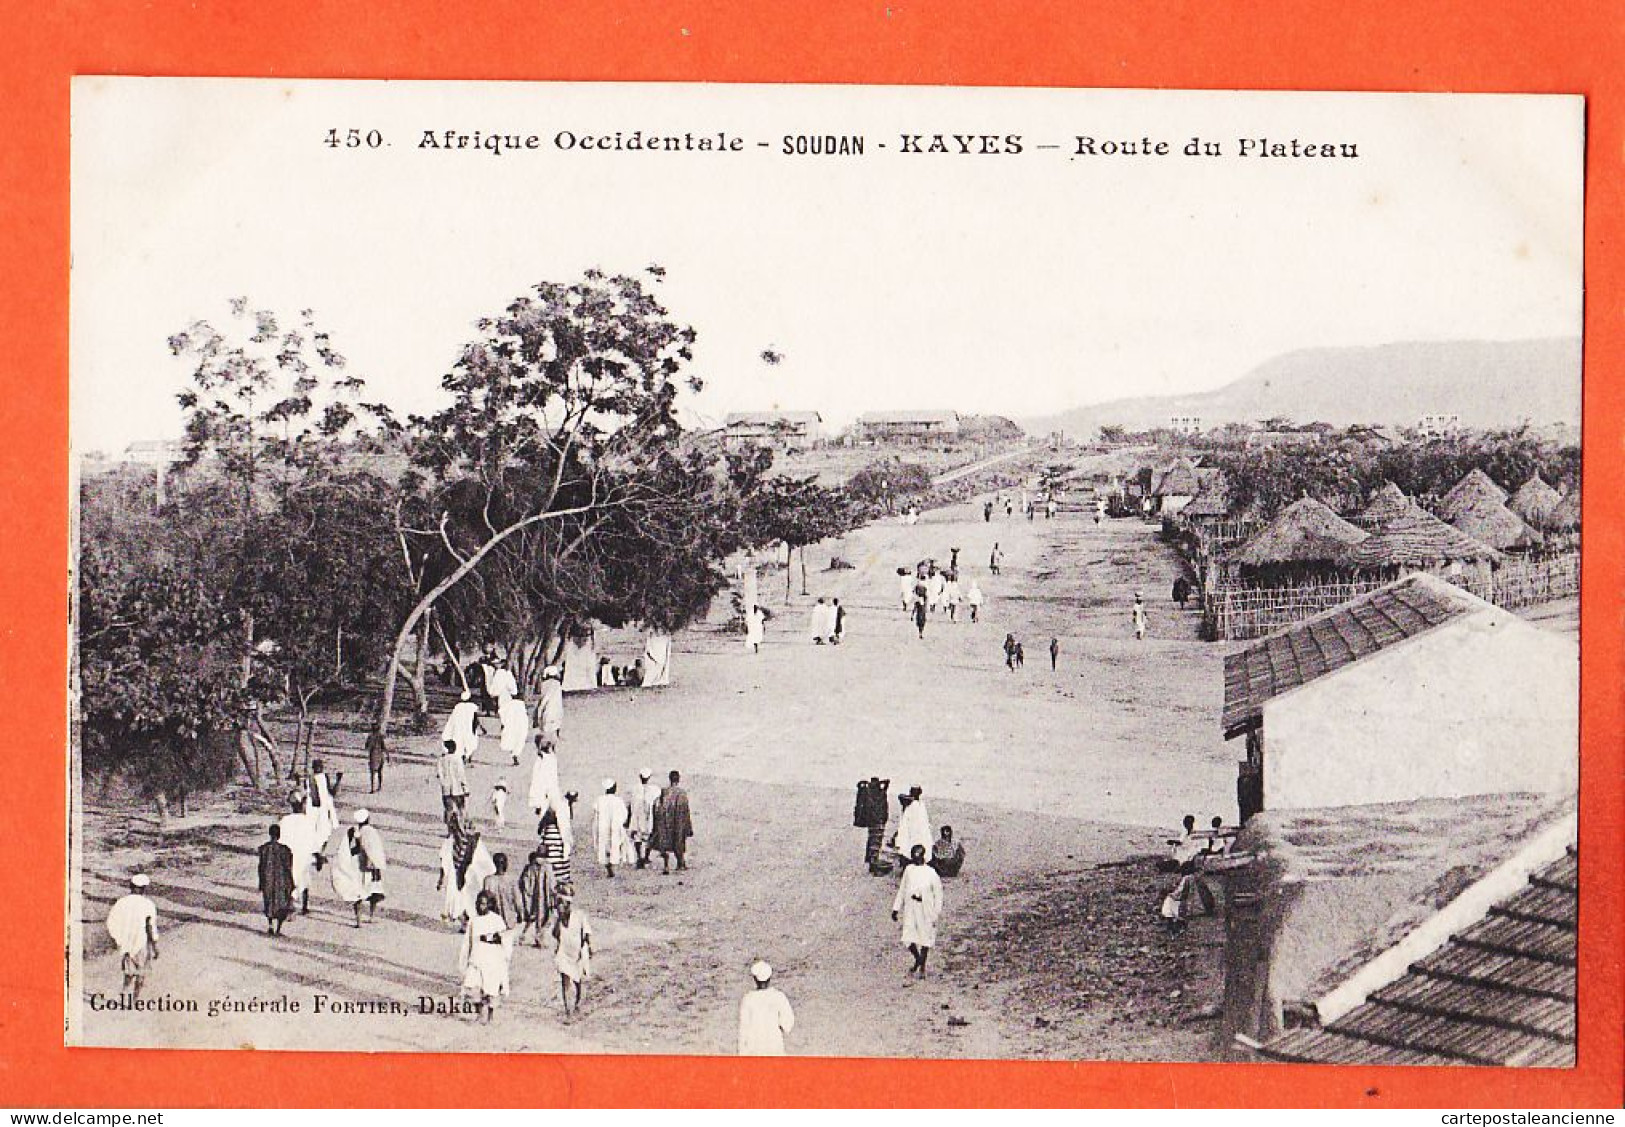 32977 / ⭐ KAYES Soudan (•◡•) Route Du Plateau 1910s ◉ Collection Generale FORTIER Dakar 450 Afrique Occidentale - Sudán